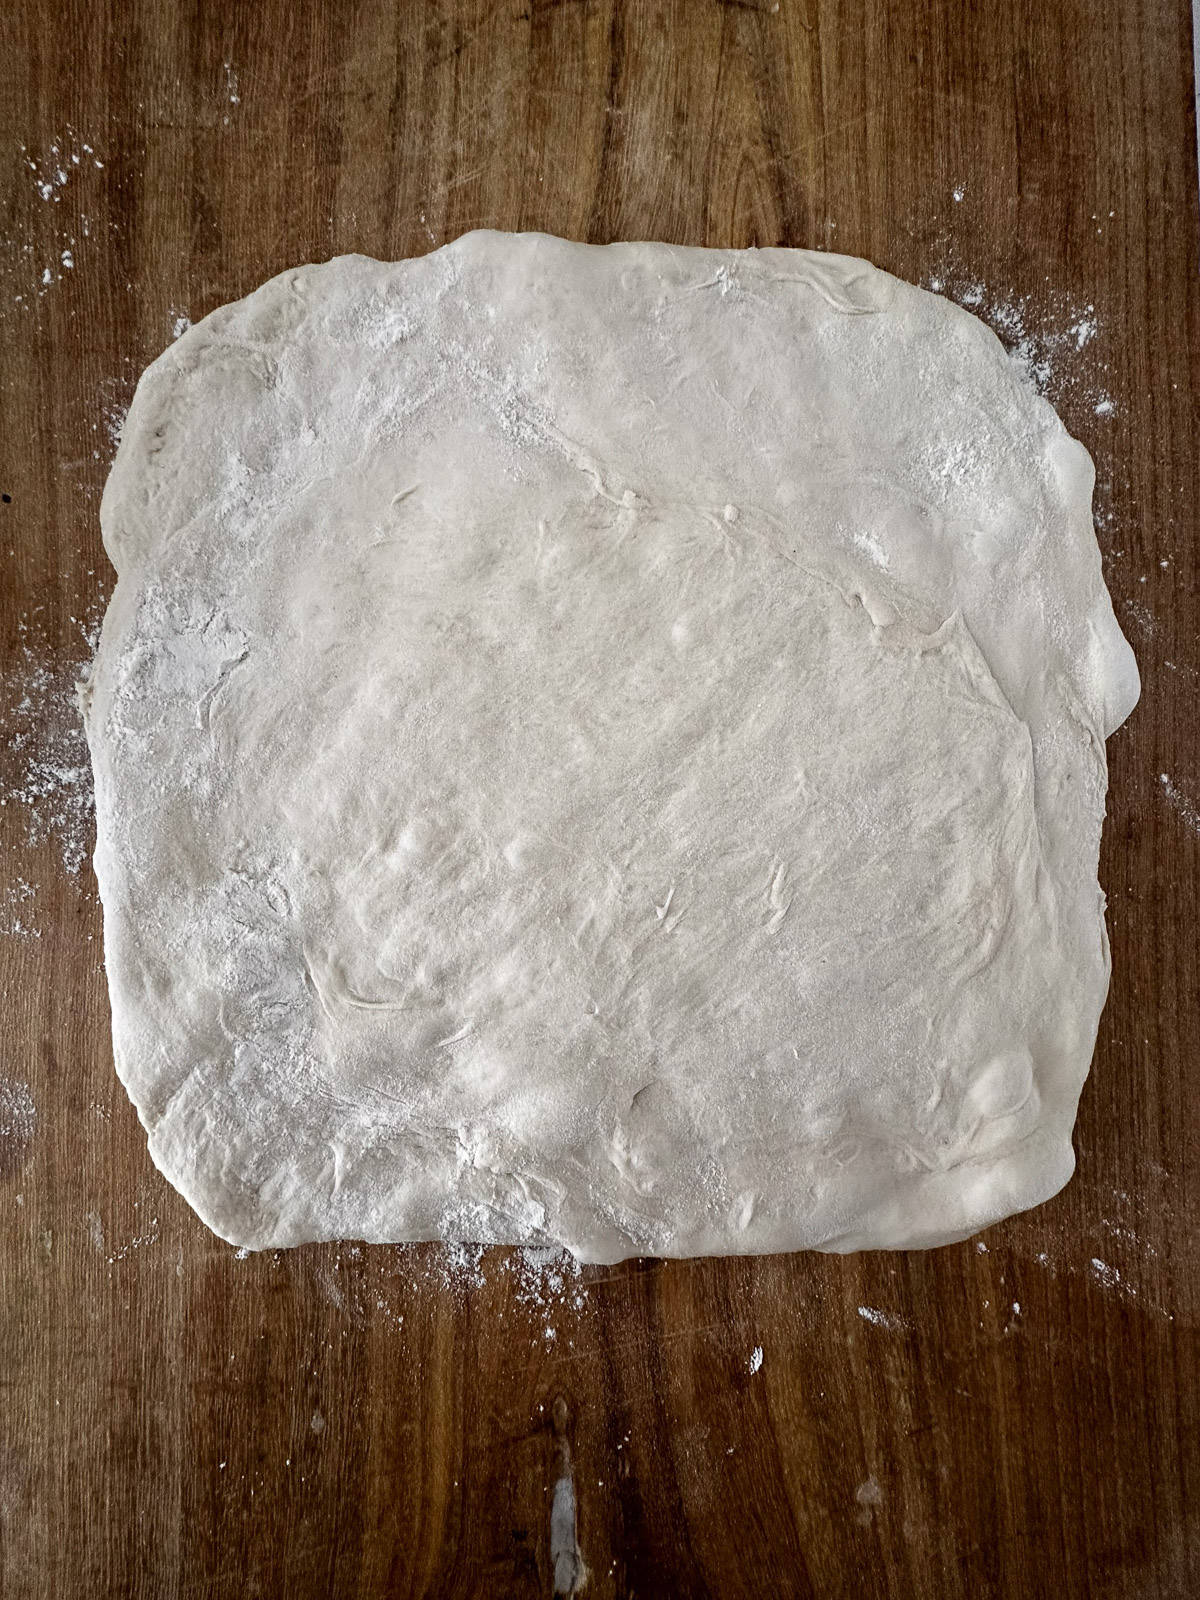 Square shape of Italian bread dough.